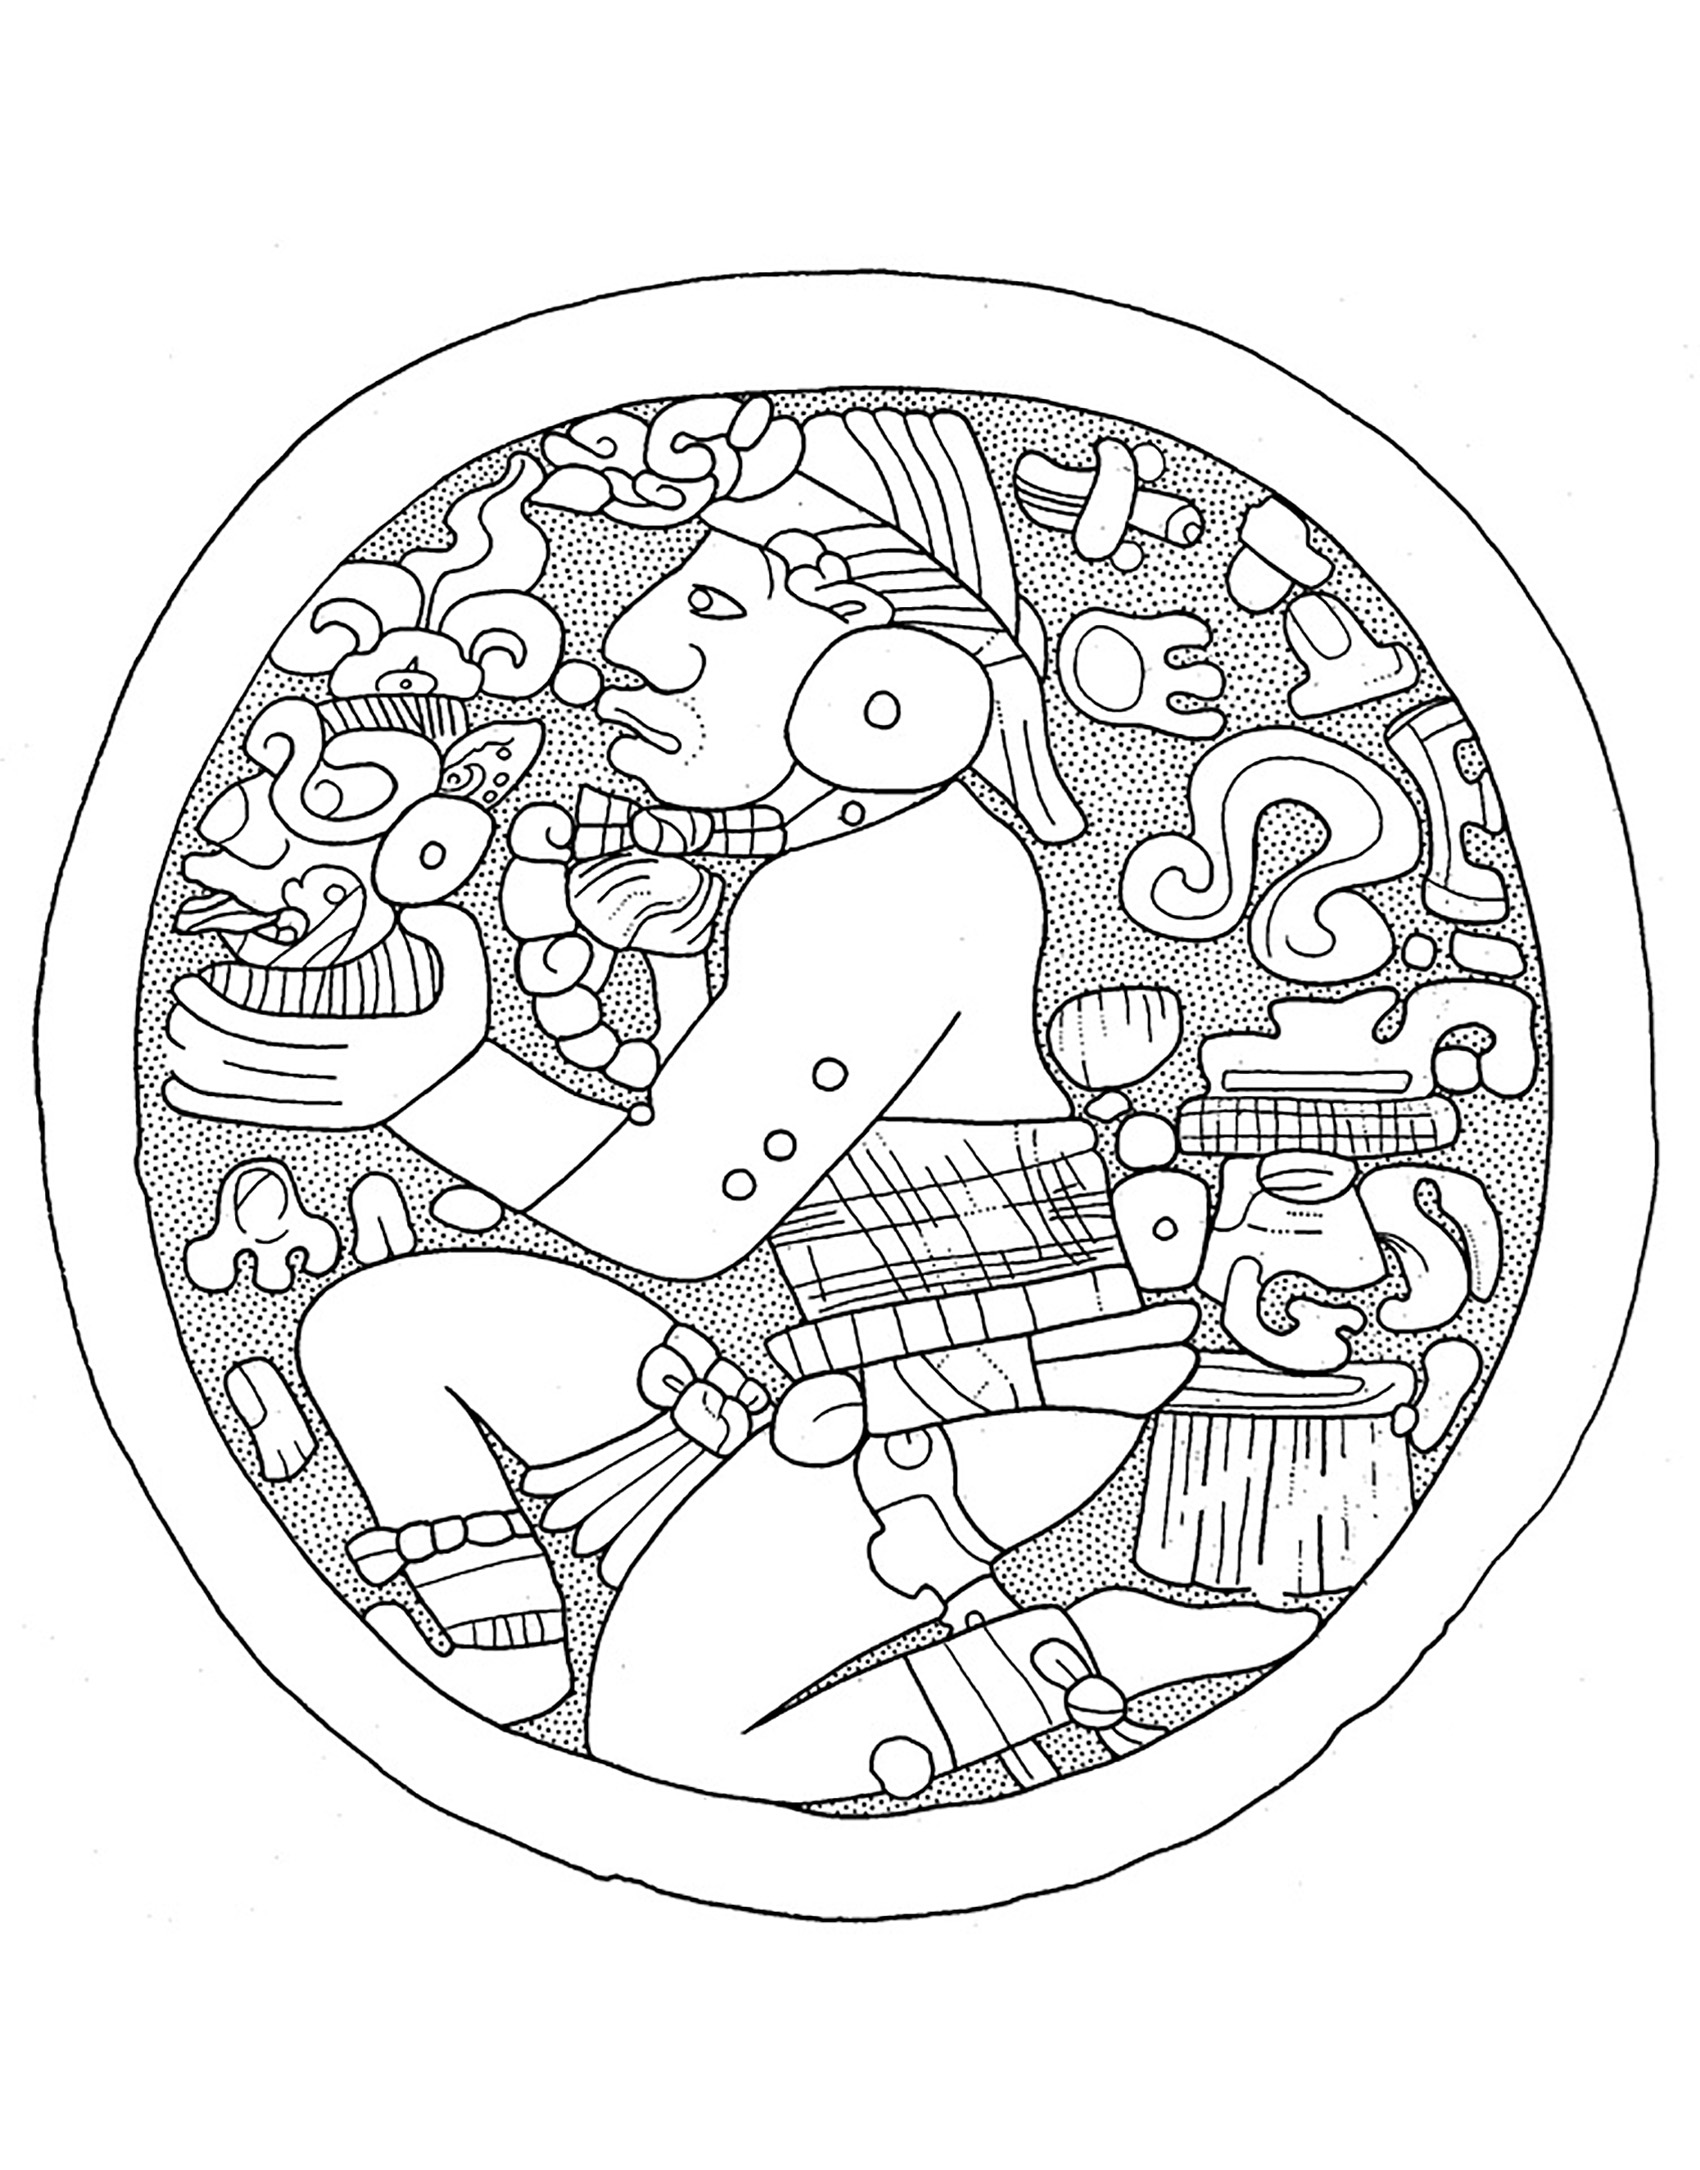 Placa de sinalização da orelha maia clássica de Lowland no Museu De Young. Desenho de N. Carter.